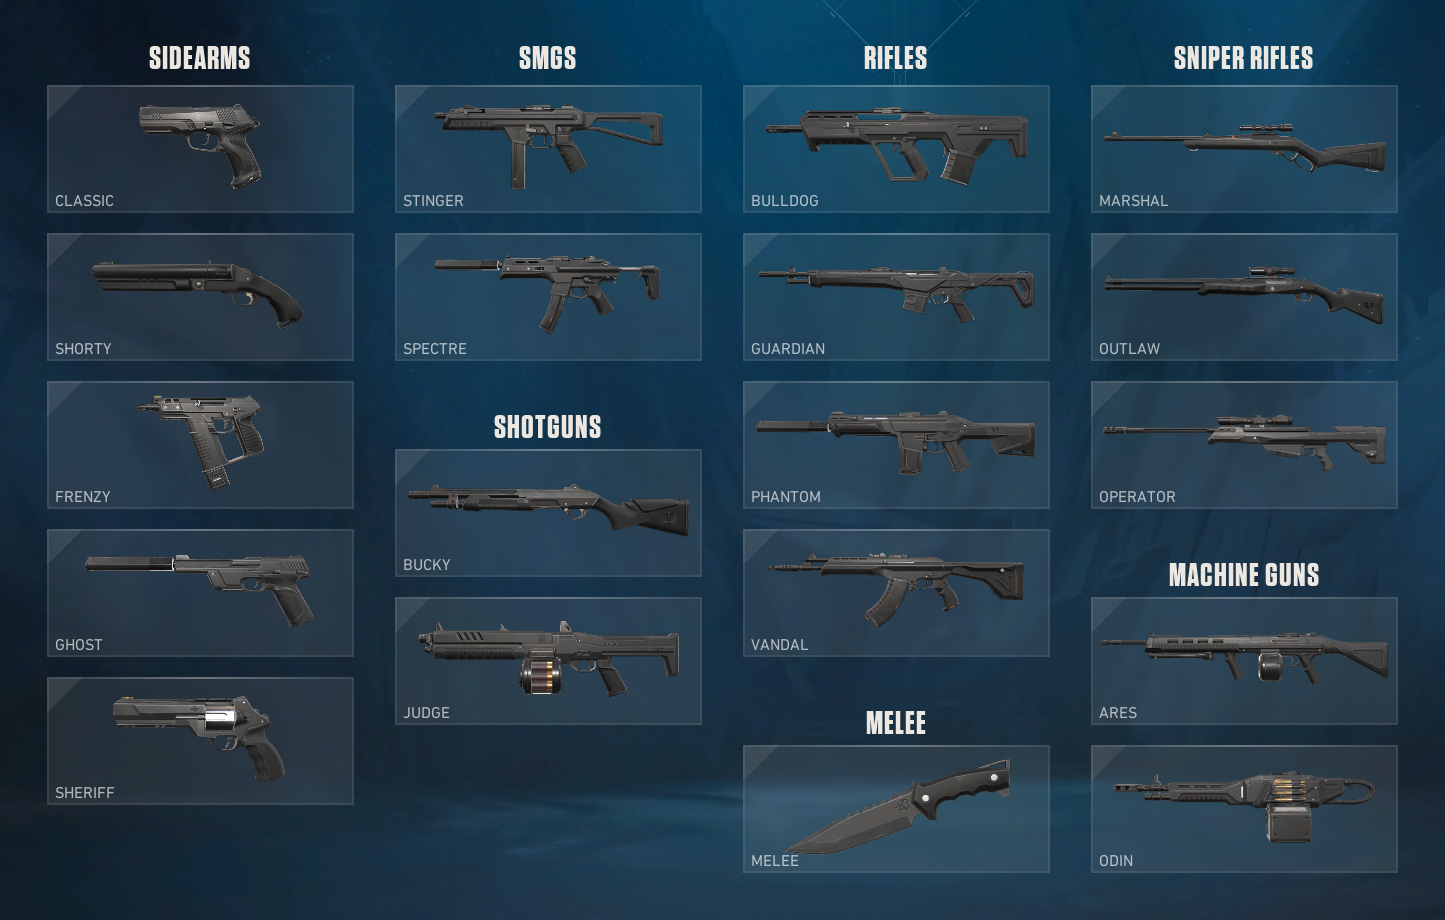 types of machine guns